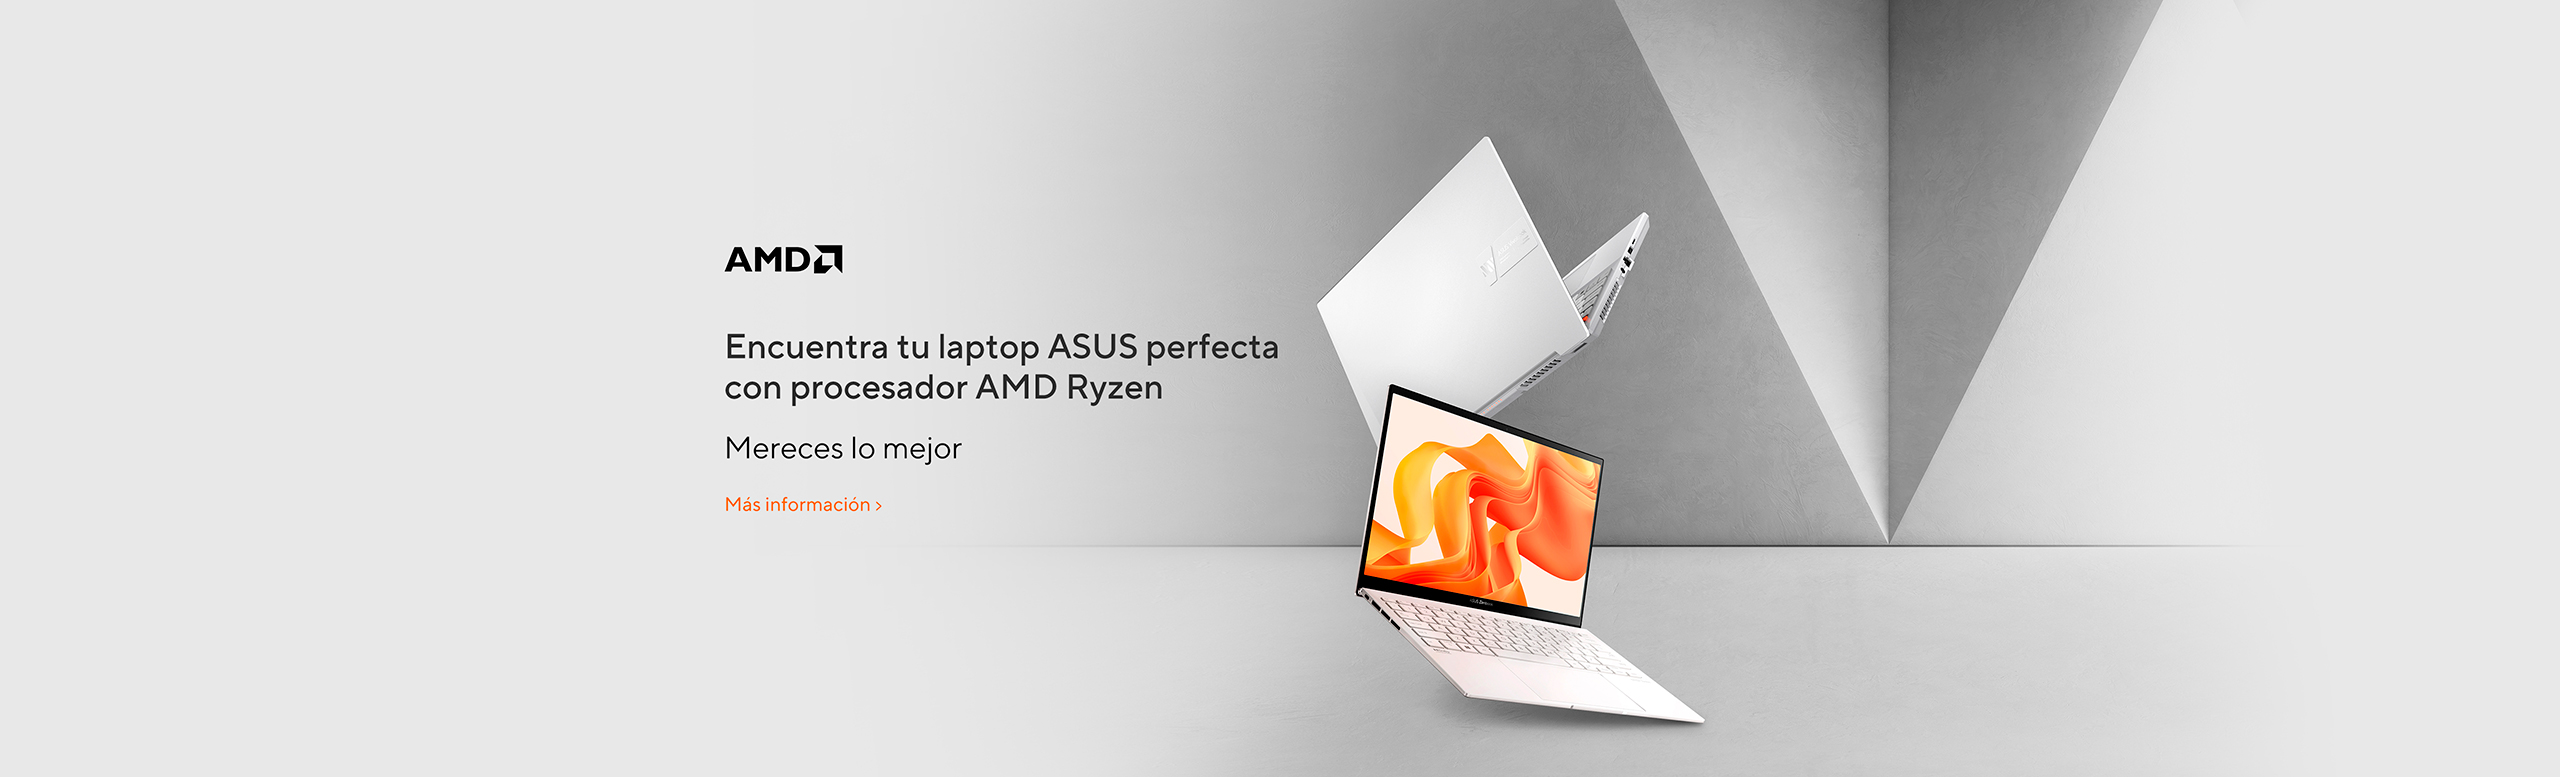 Encuentra tu laptop ASUS perfecta con procesador AMD Ryzen